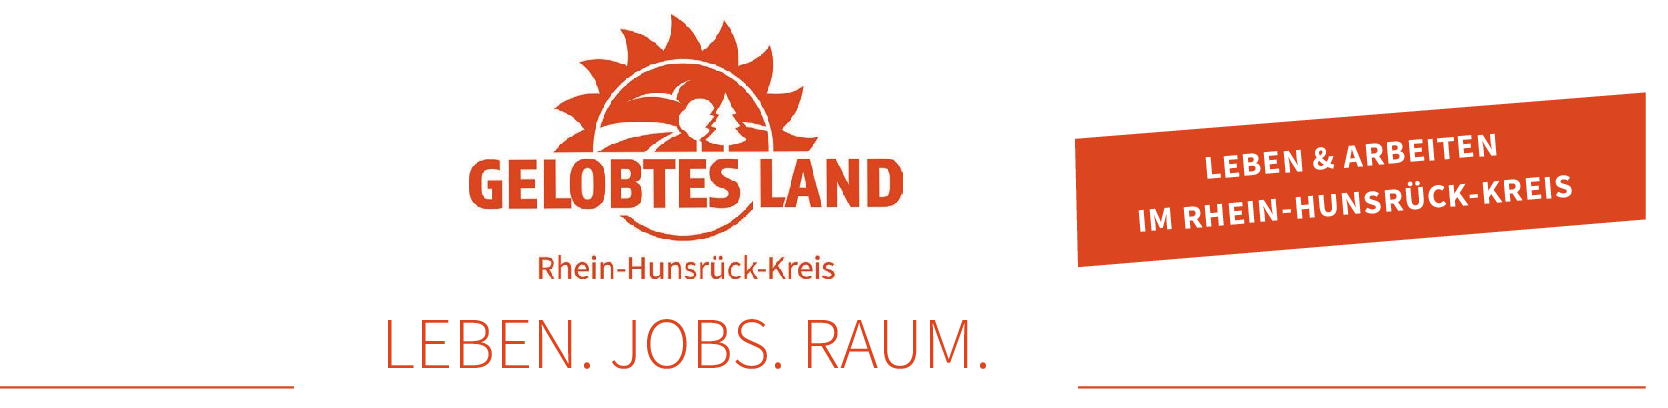 Eine App für den Rhein-Hunsrück-Kreis